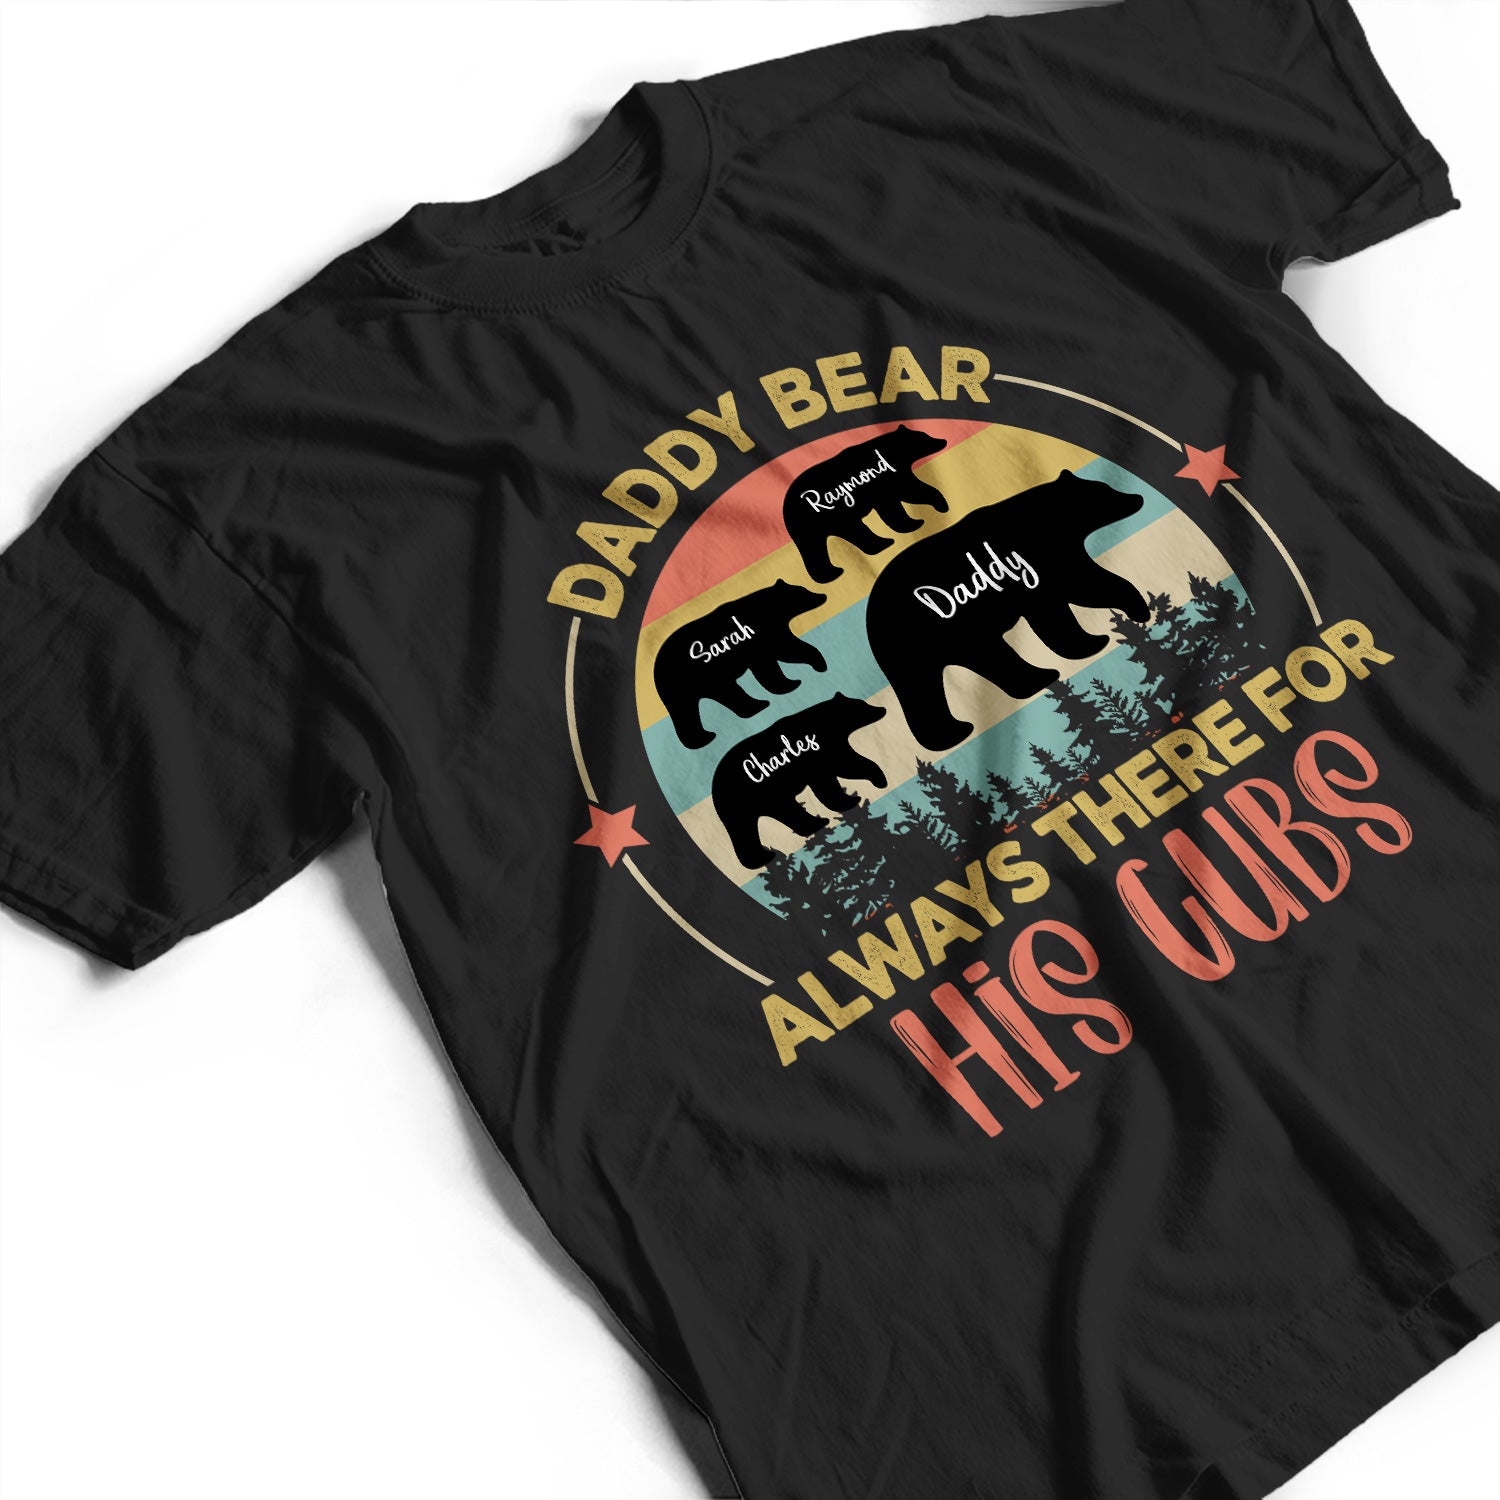 cubs shirts amazon